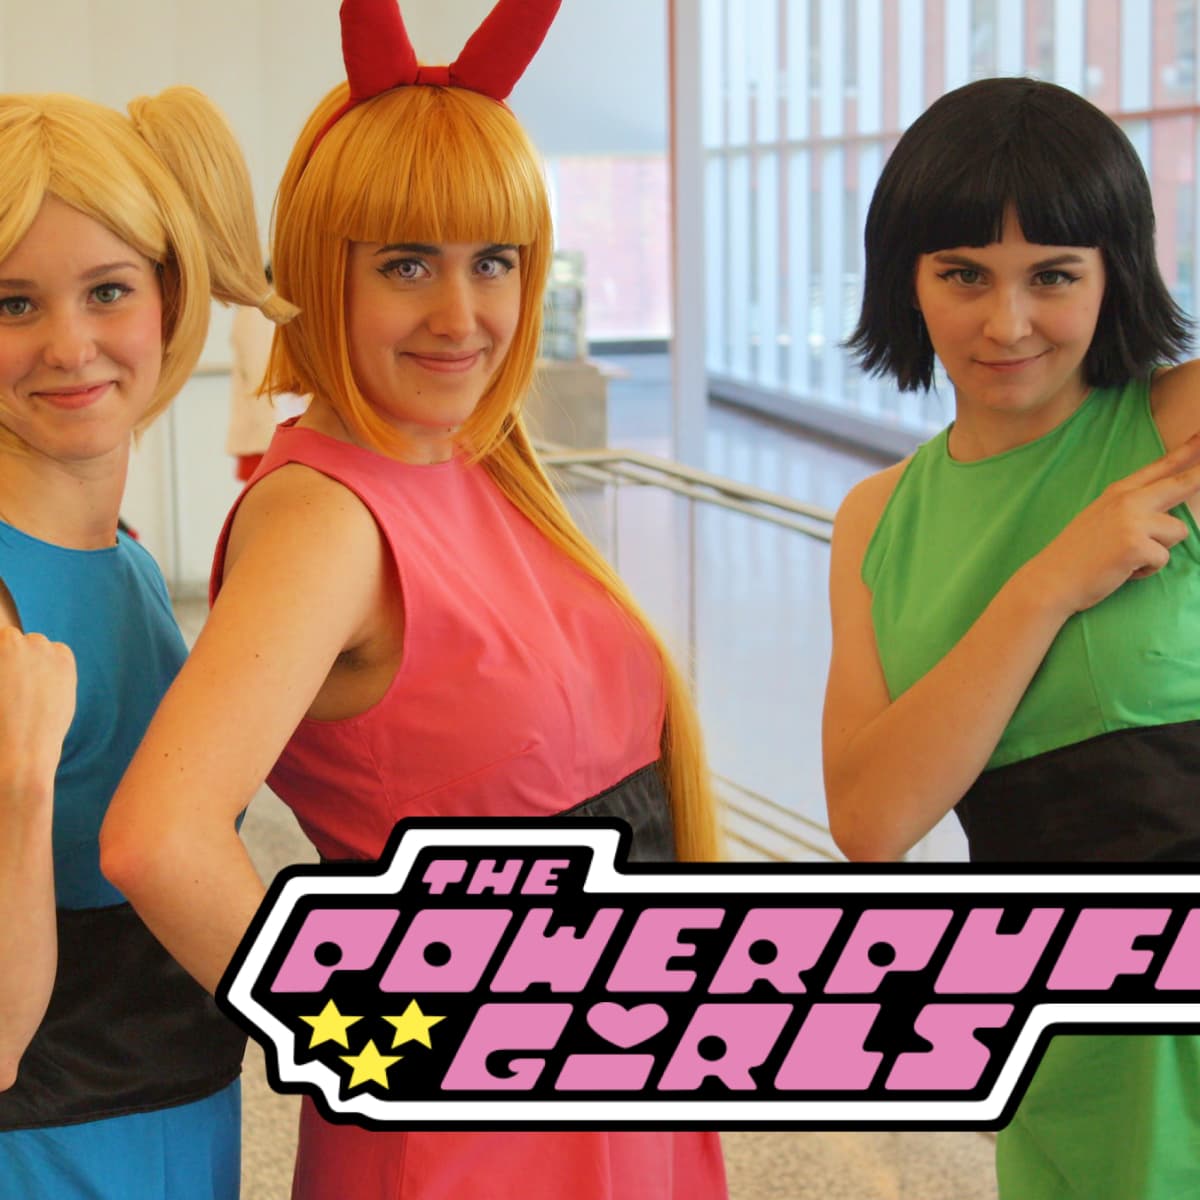 dress up powerpuff girls